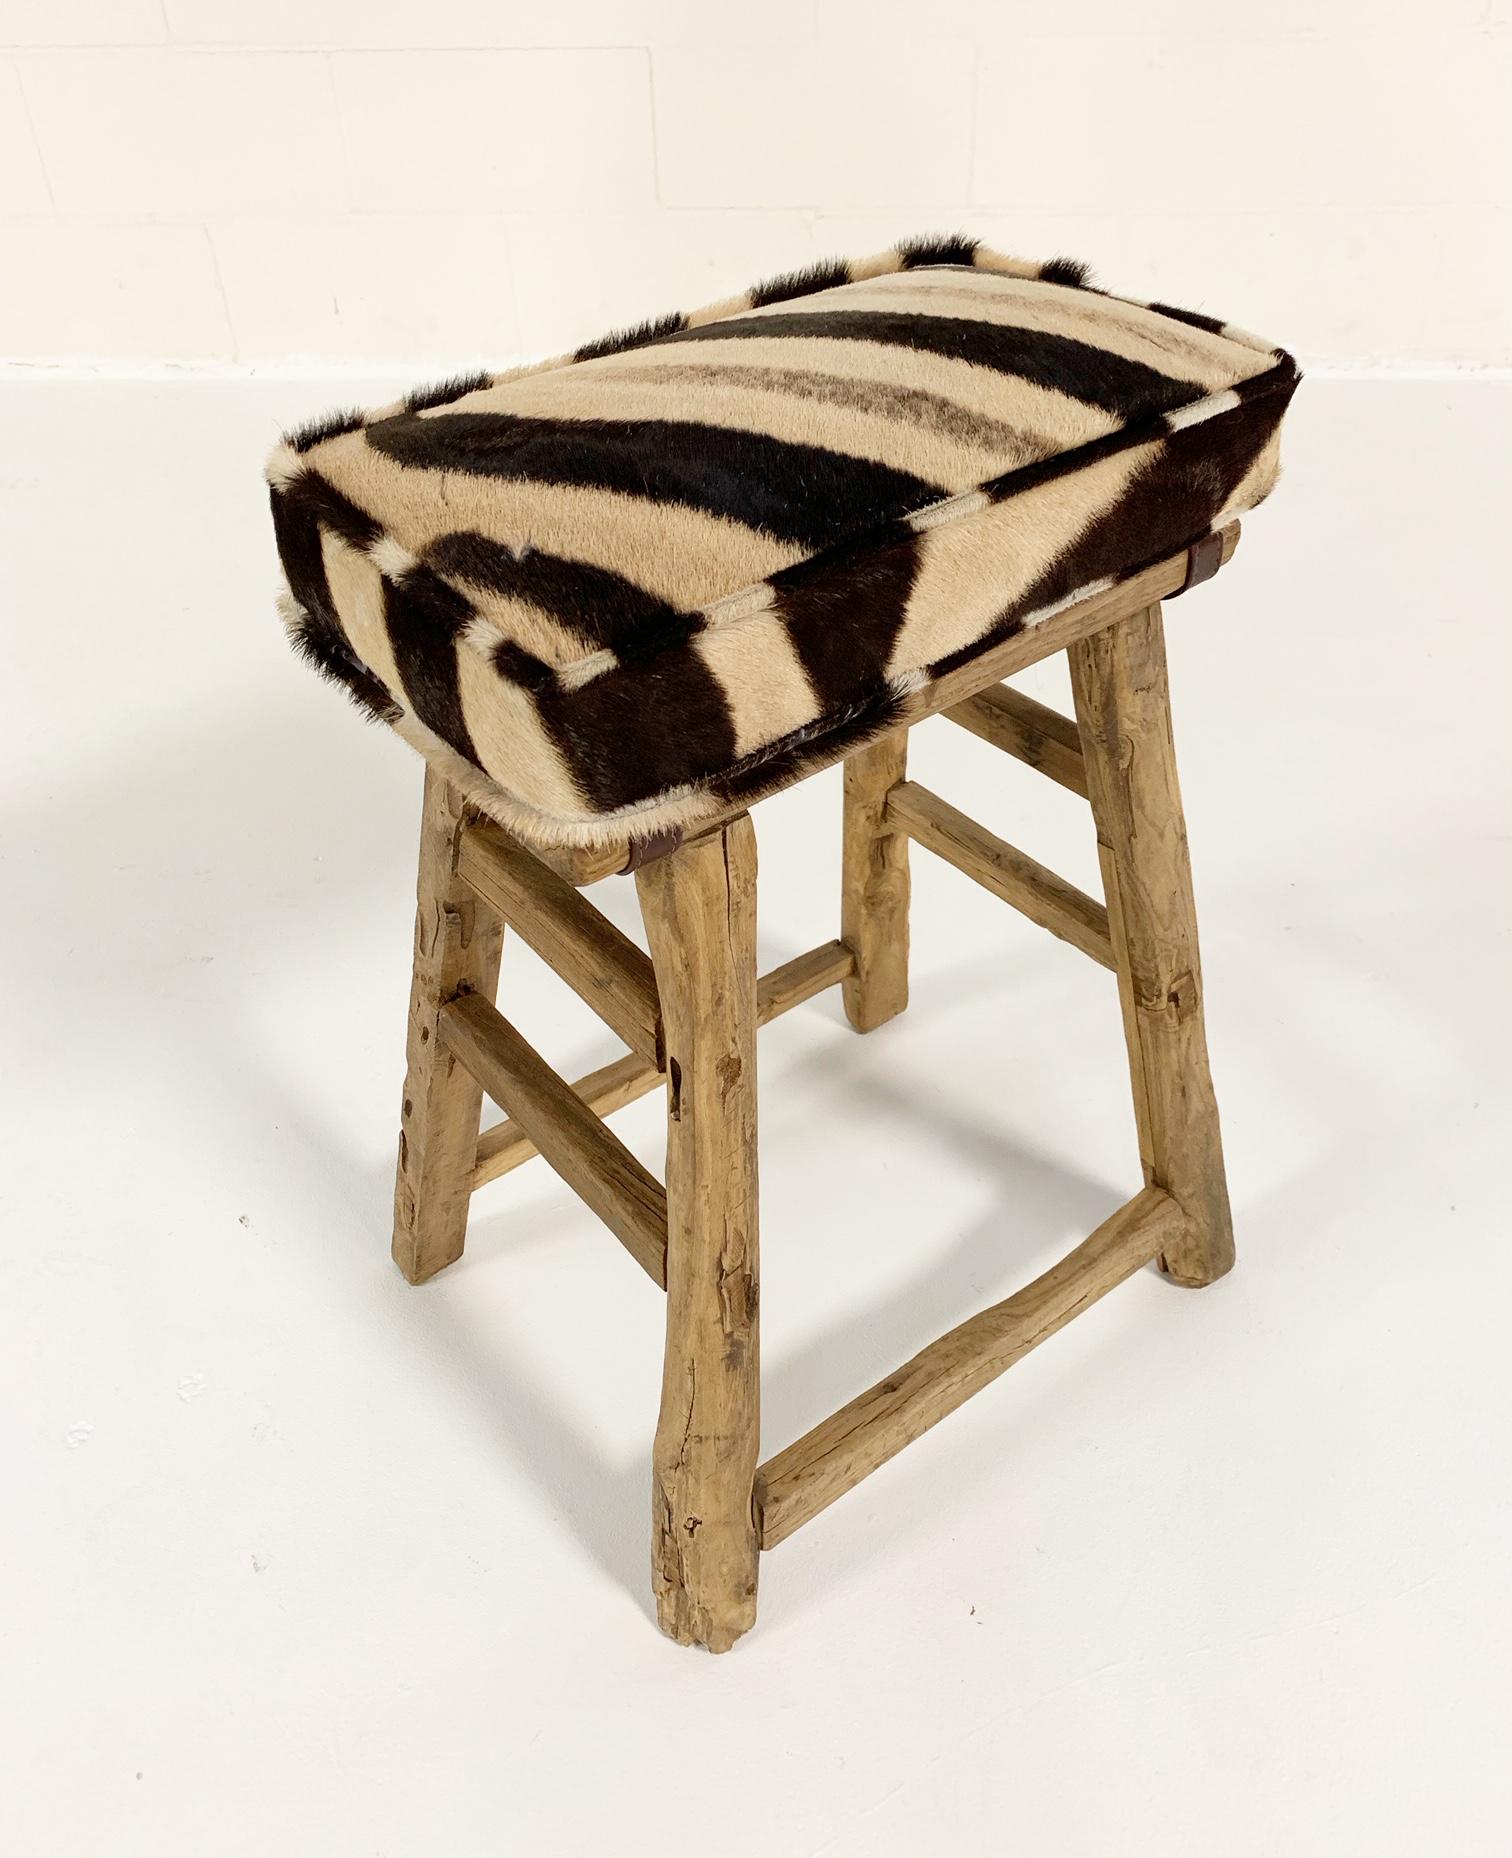 Un tabouret en bois d'orme chinois du 19e siècle, au profil simple et très agréable, à placer n'importe où. Nous avons ajouté un coussin en peau de zèbre personnalisé pour le confort. 

5 disponibles.